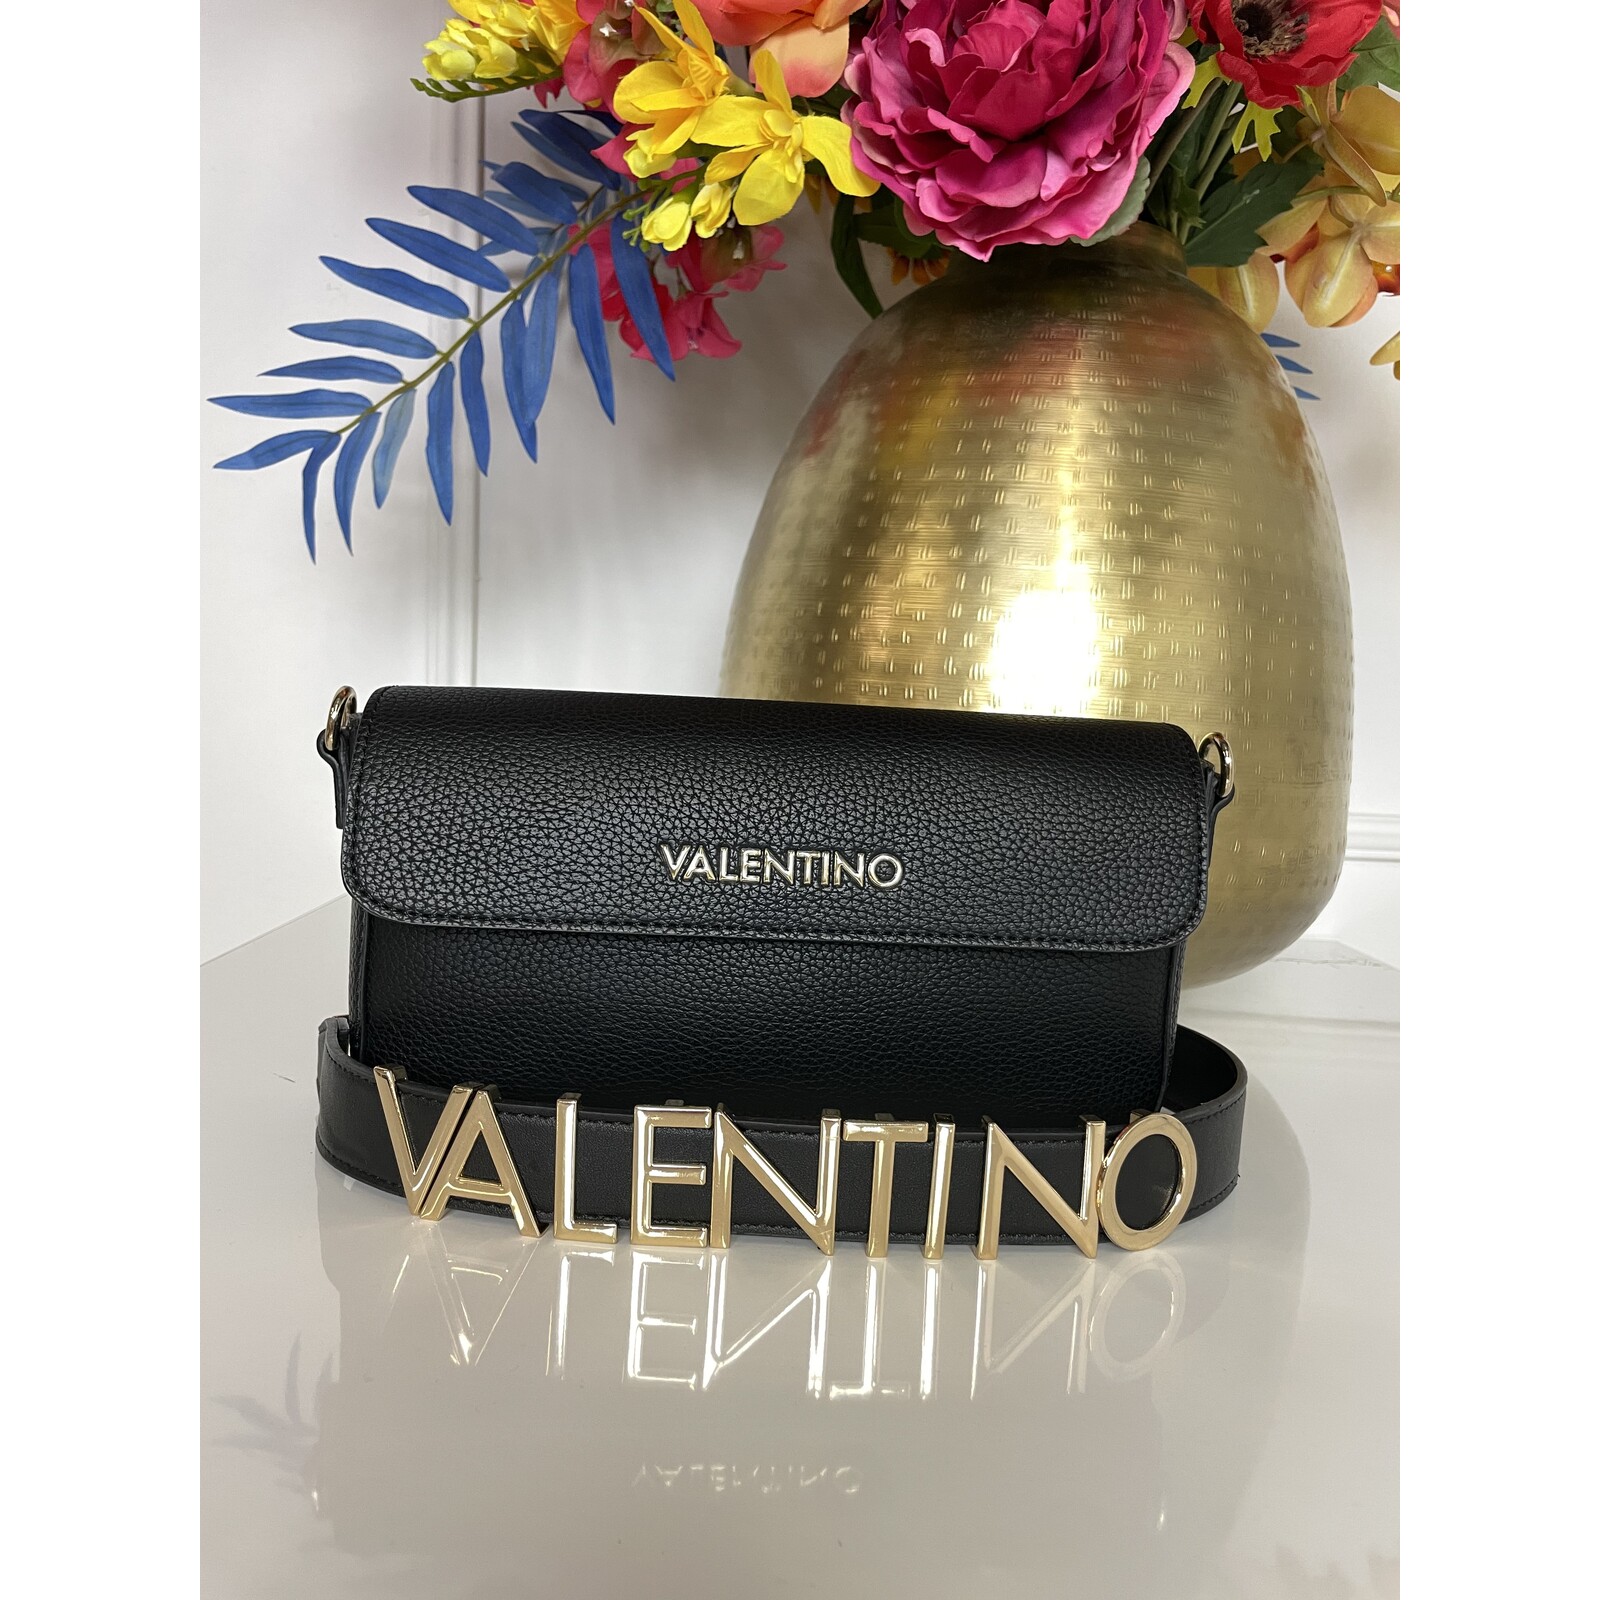 Valentino Bags Alexia Crossbody Bag, Black